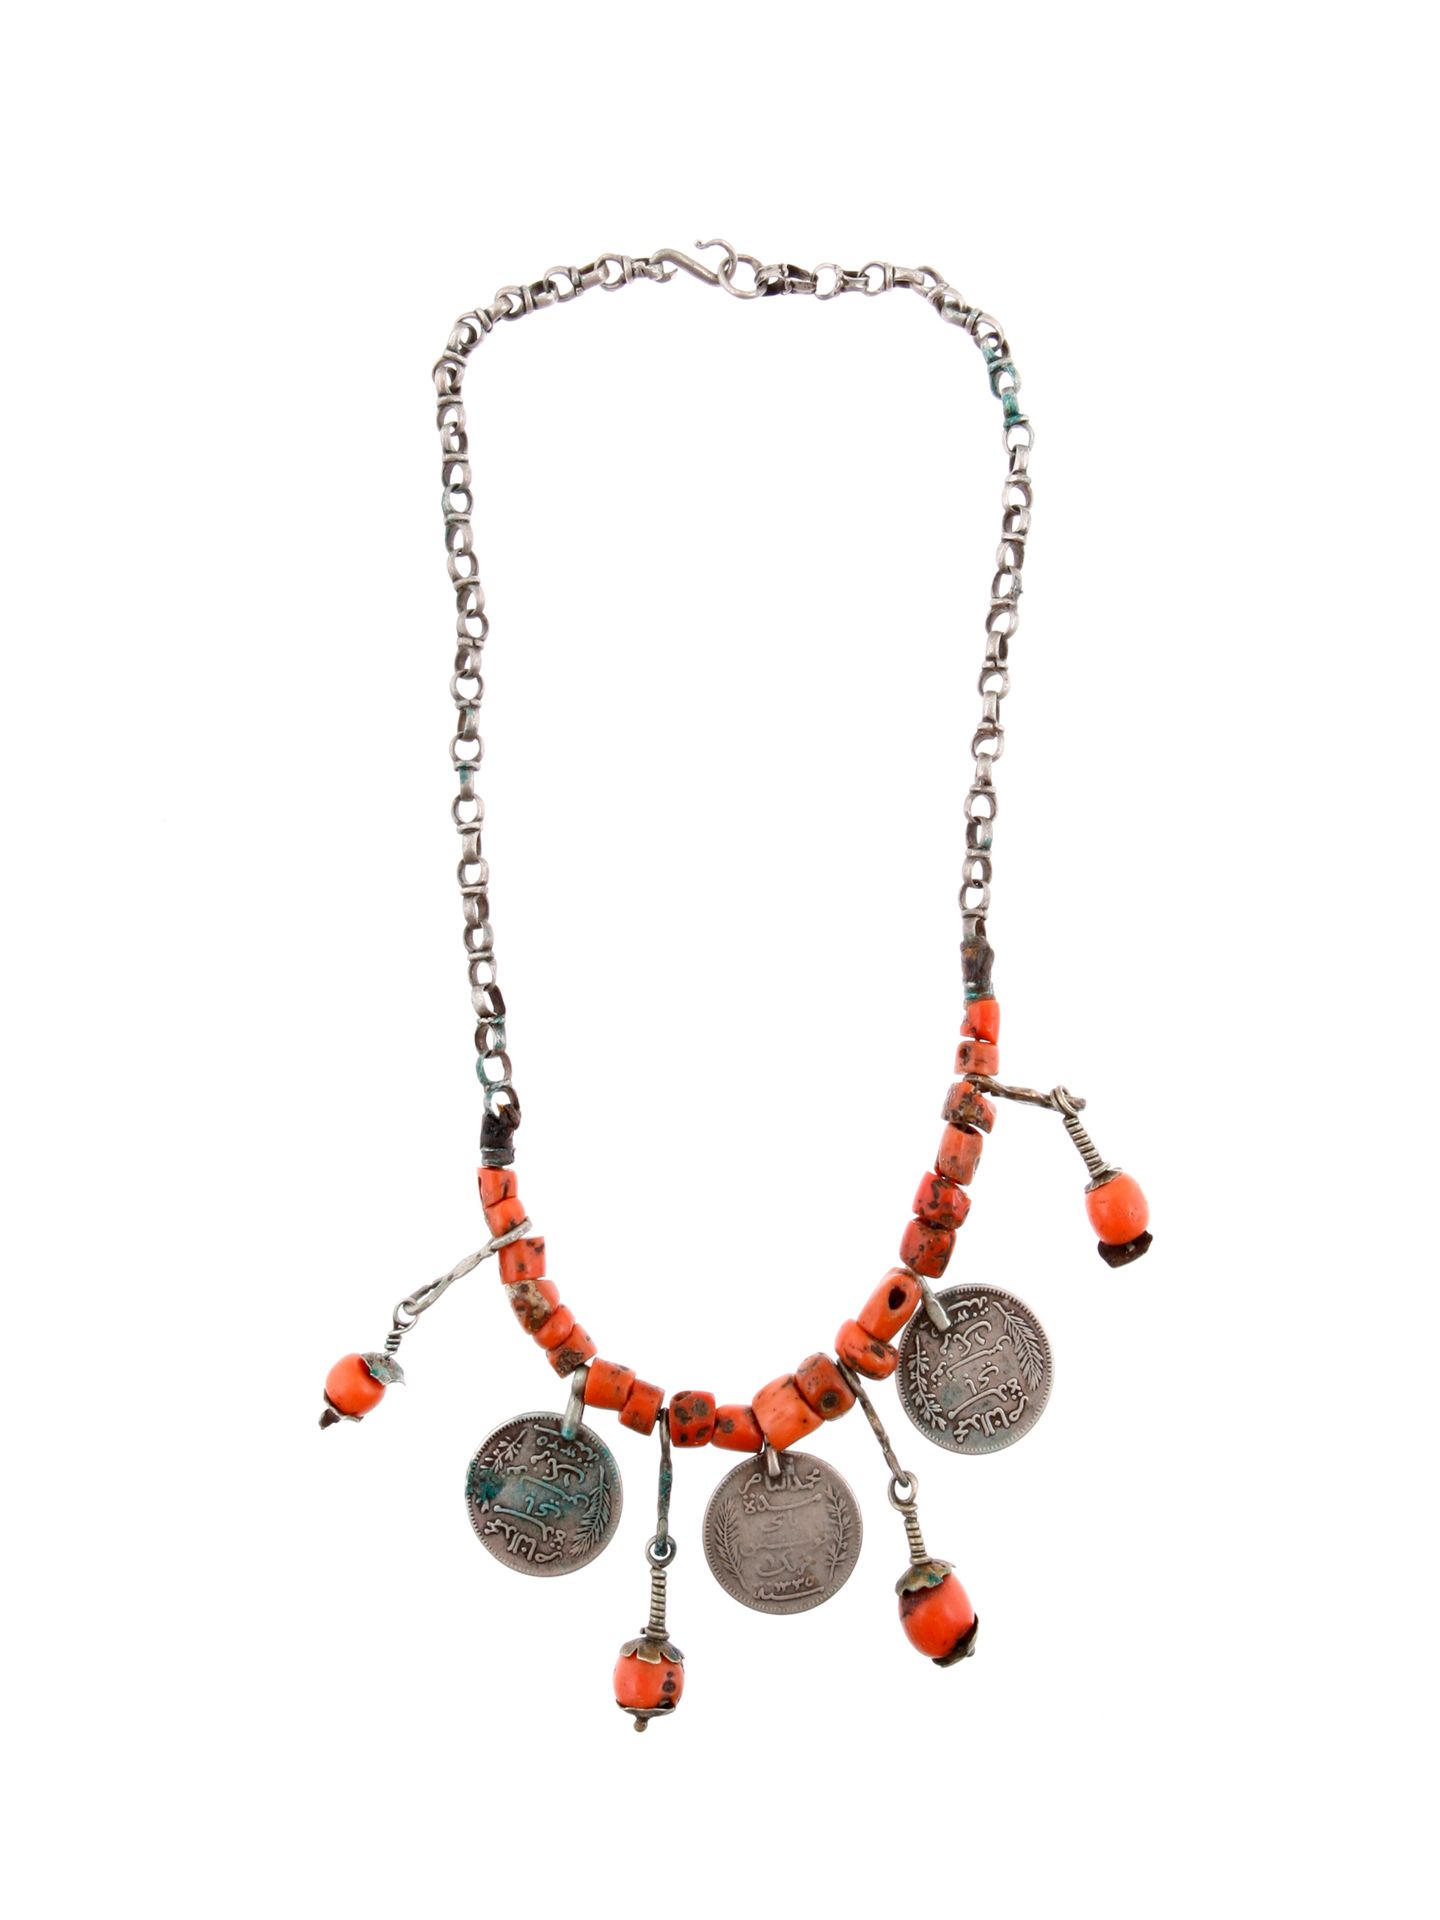 A Berber Necklace with seven Pendants Collier mit sieben Schmuck-Anhängern

Berb&hellip;